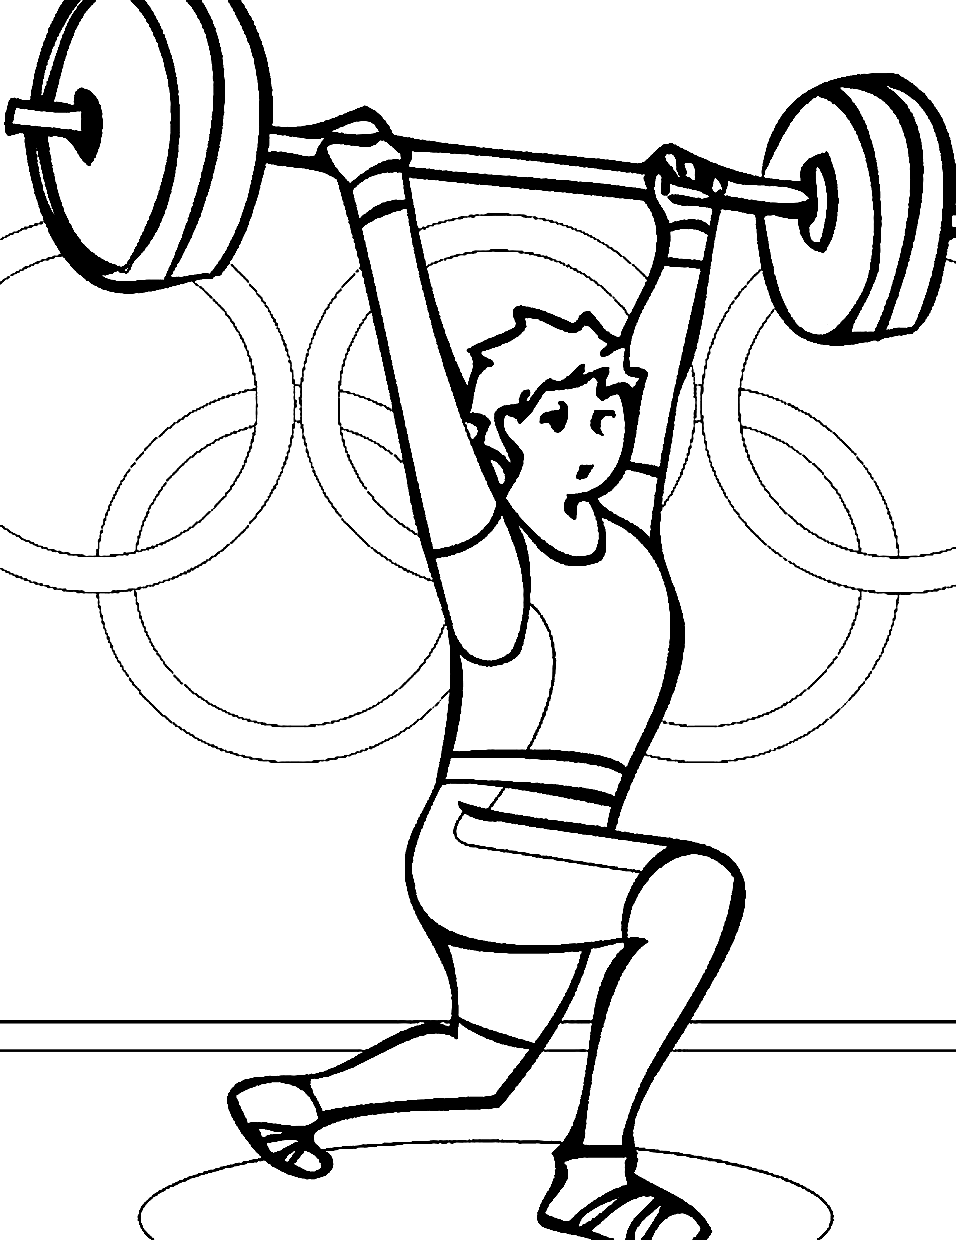 Levantamiento de pesas olímpico de levantamiento de pesas